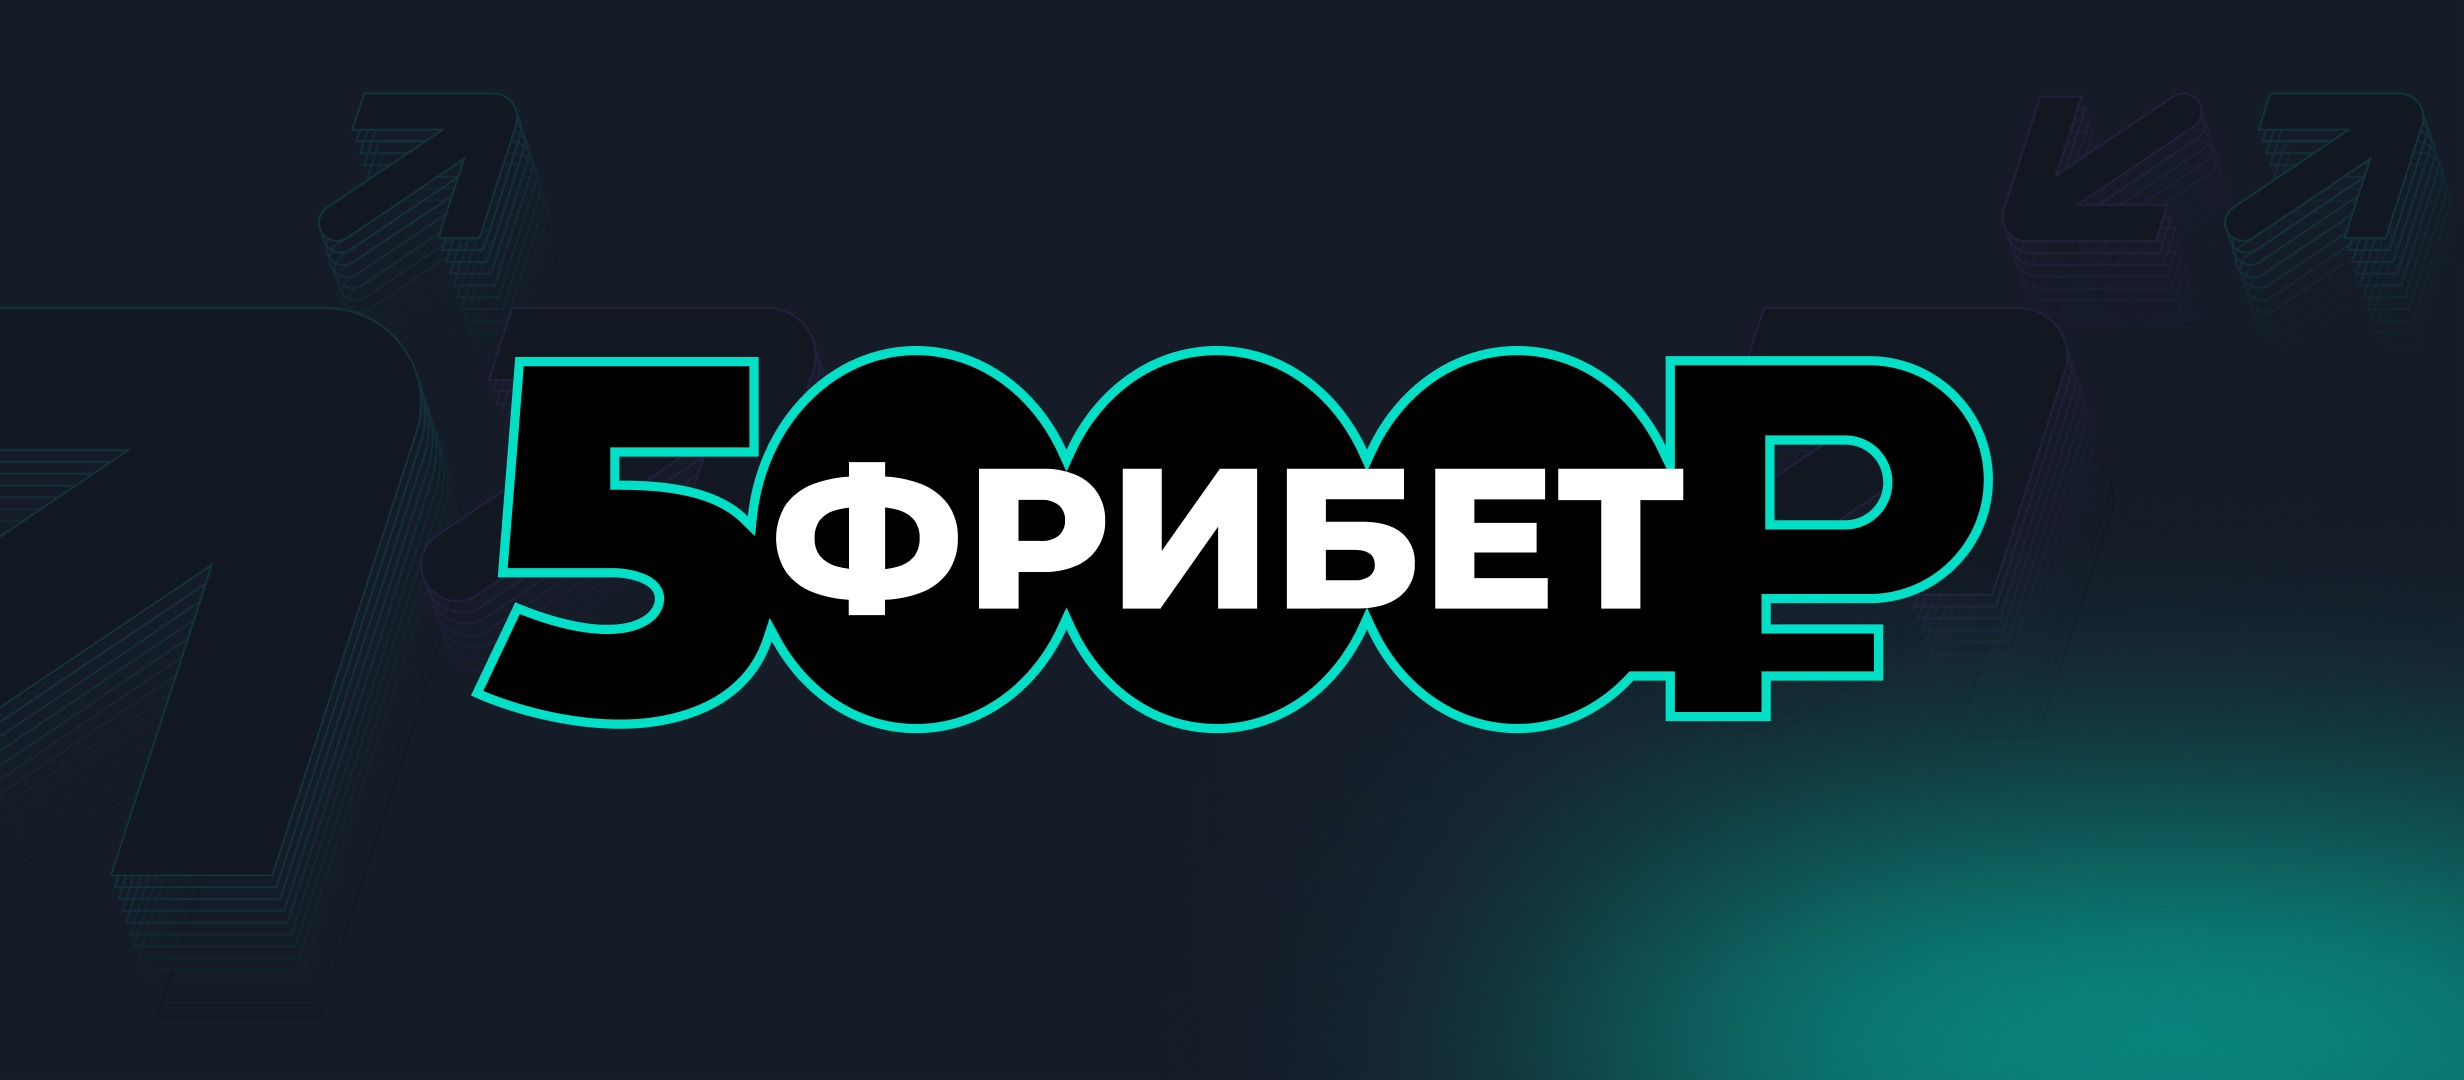 BK Pari nachislyaet fribety do 5 000 rublej za stavki na sport